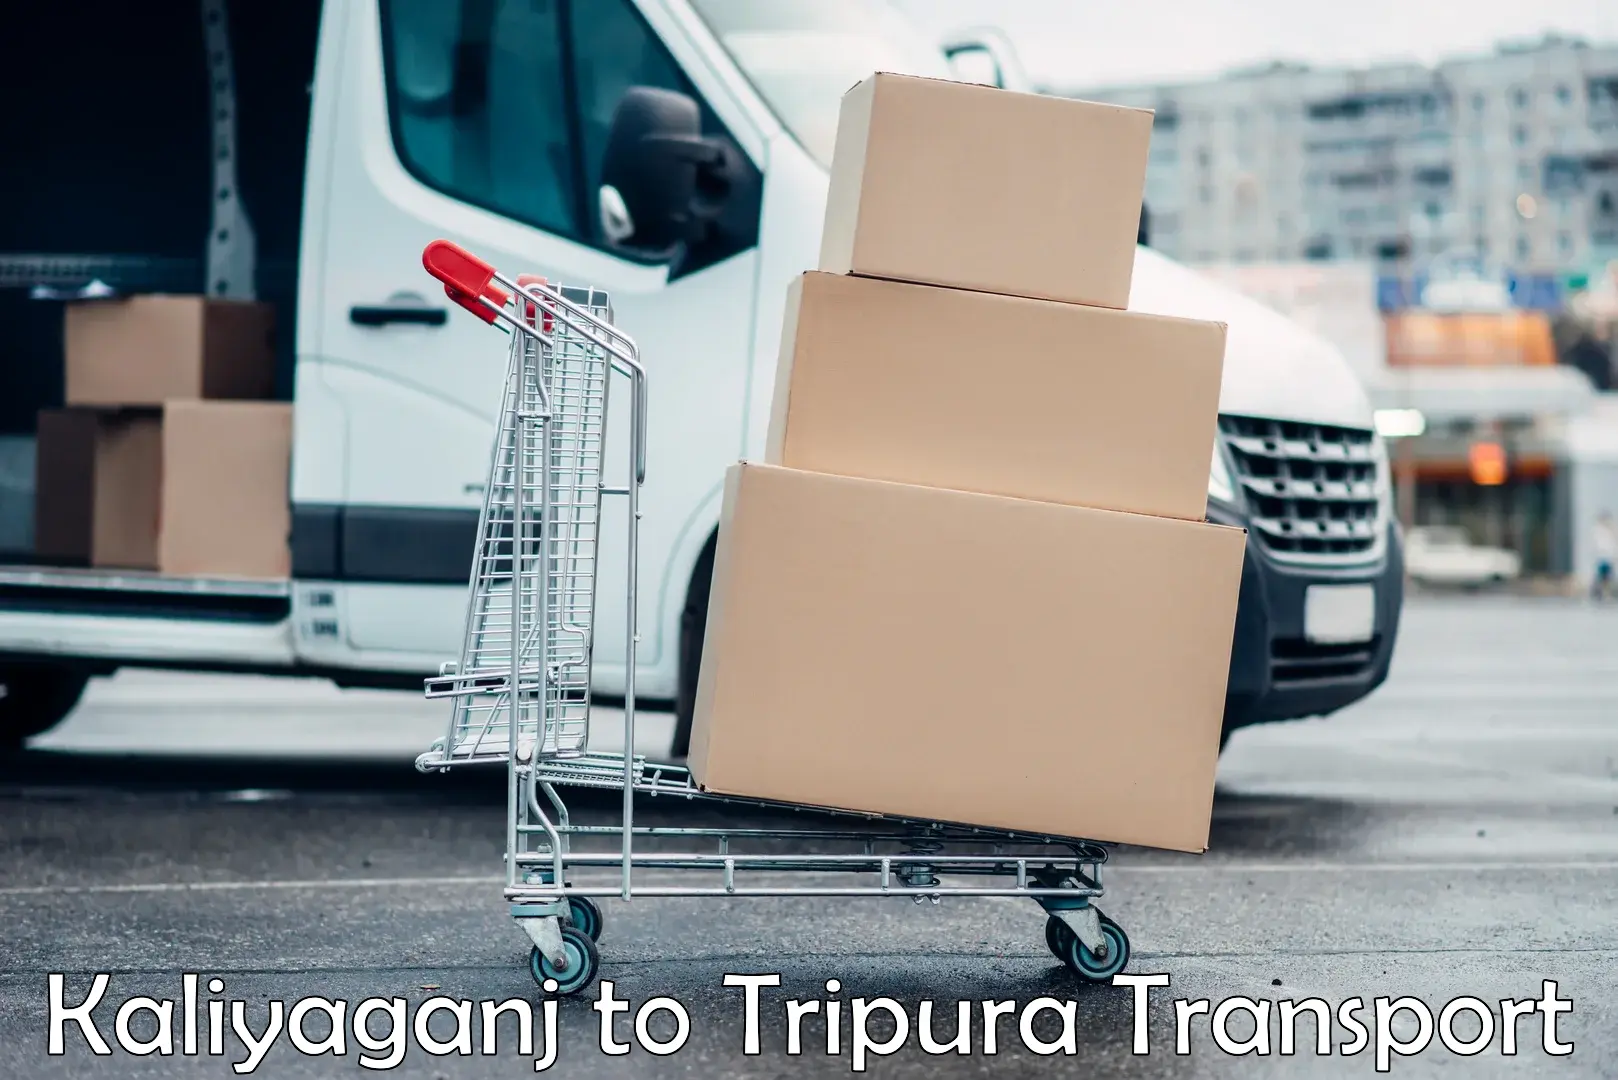 Luggage transport services Kaliyaganj to Tripura